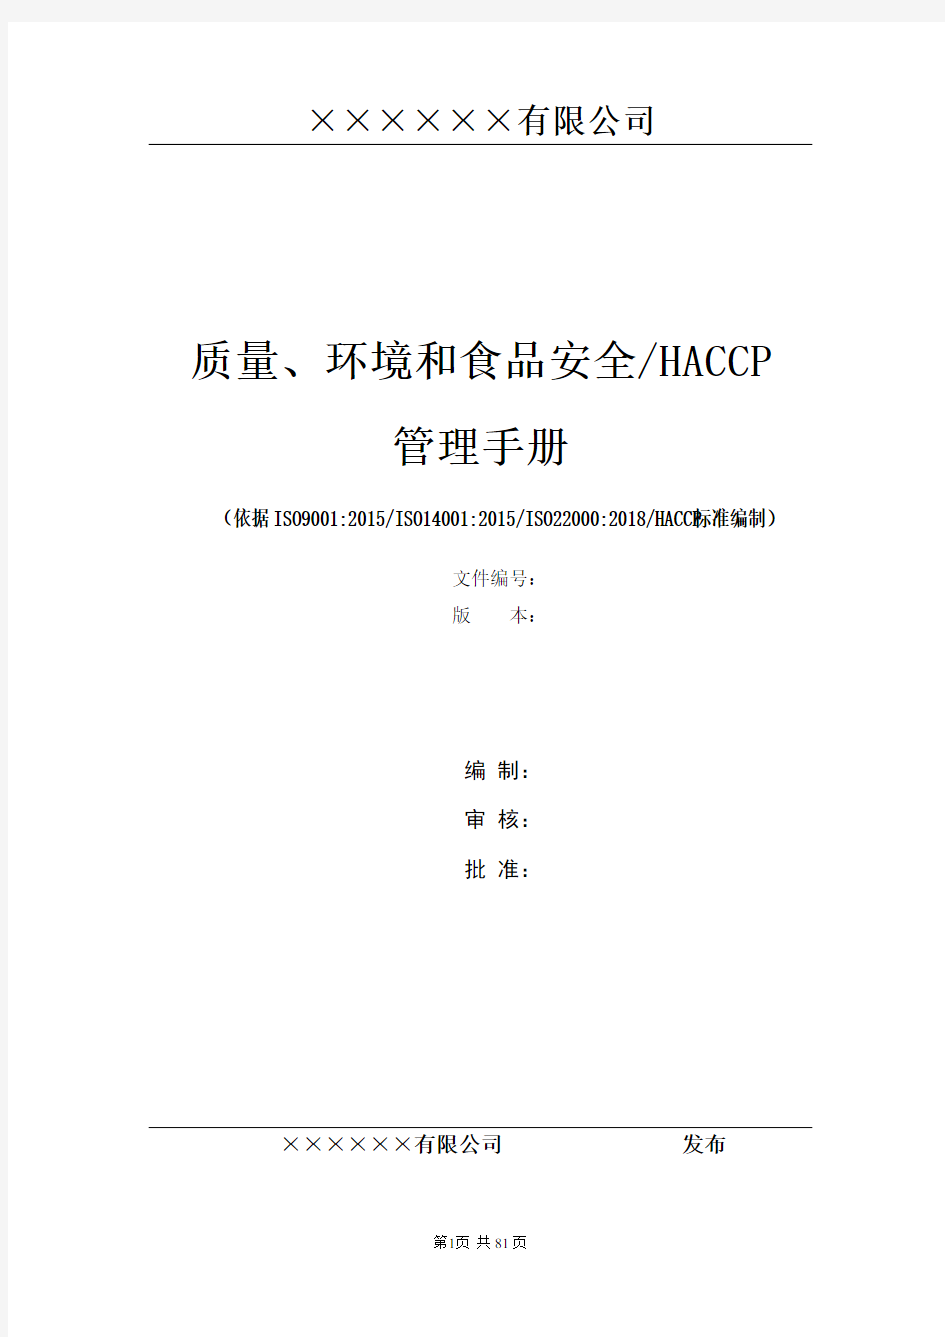 质量+环境+HACCP+食品安全体系管理手册(四合一)